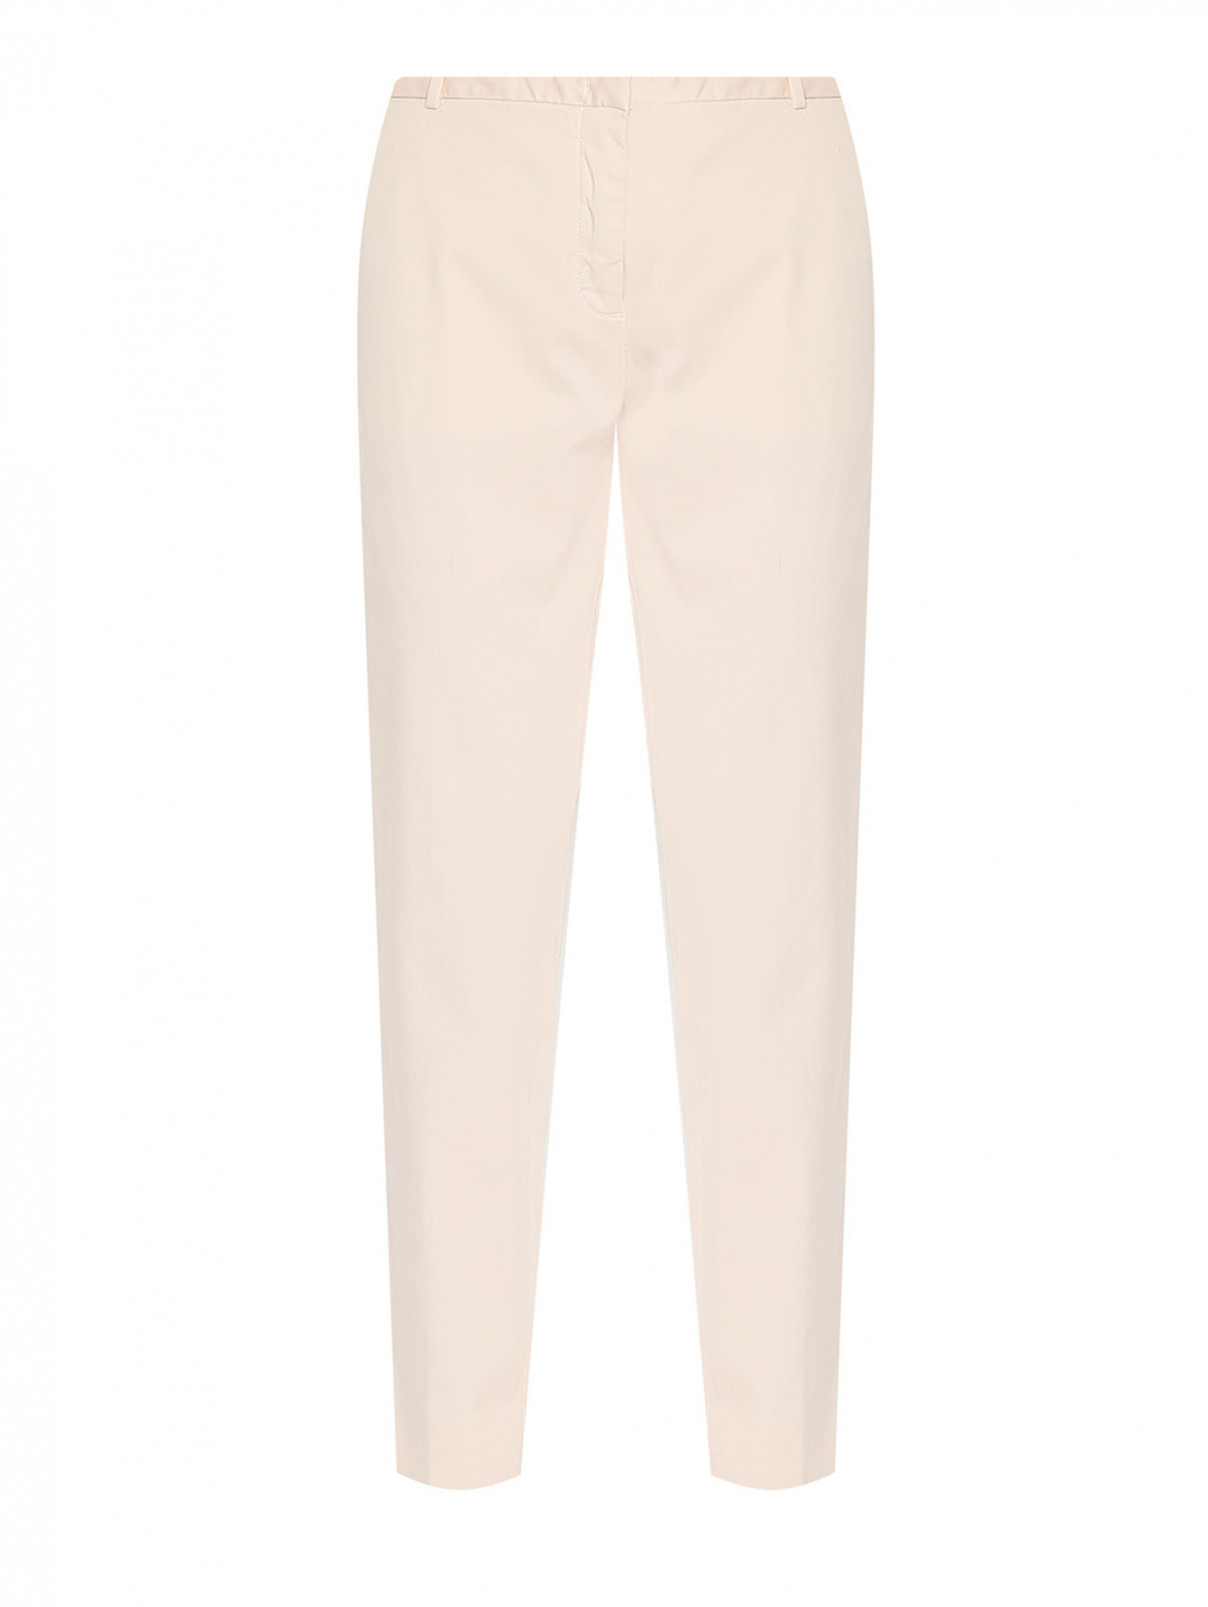 Однотонные брюки из хлопка Fabiana Filippi  –  Общий вид  – Цвет:  Розовый